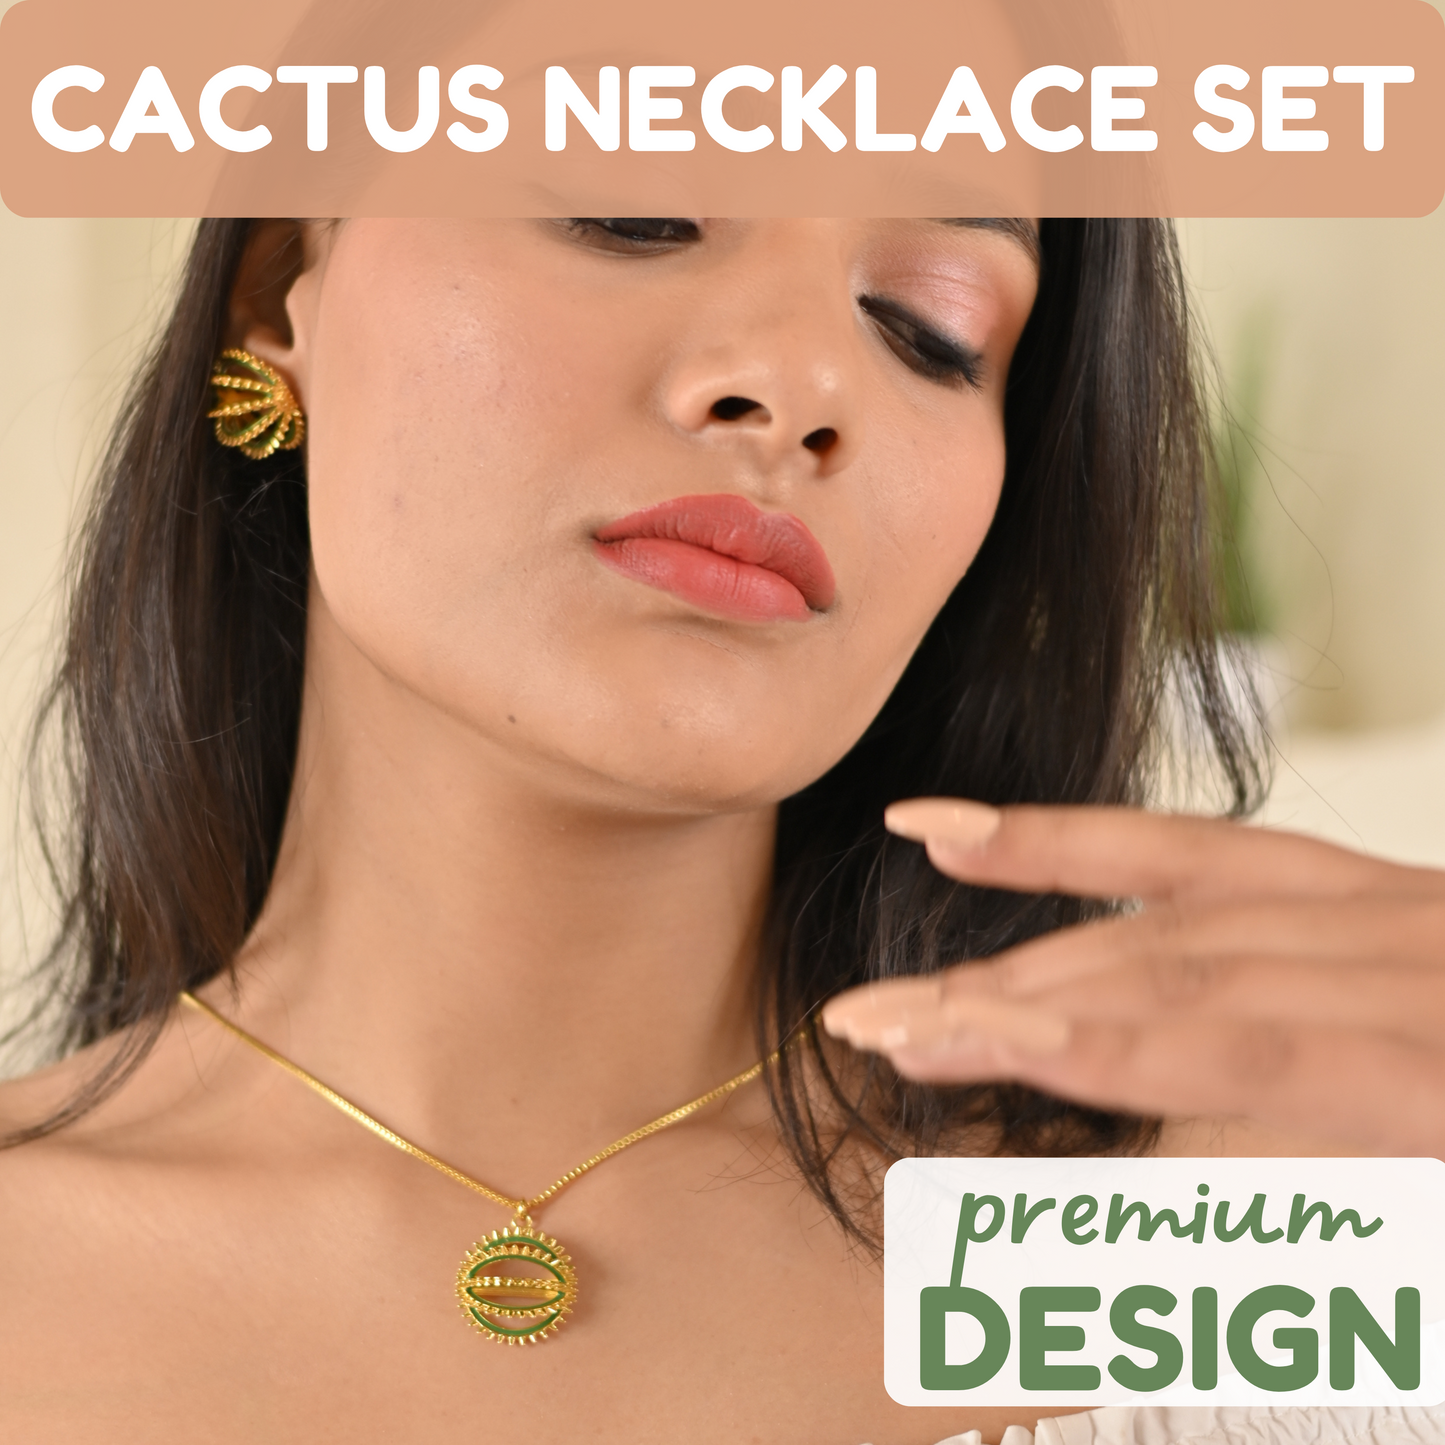 Cactus Necklace Set